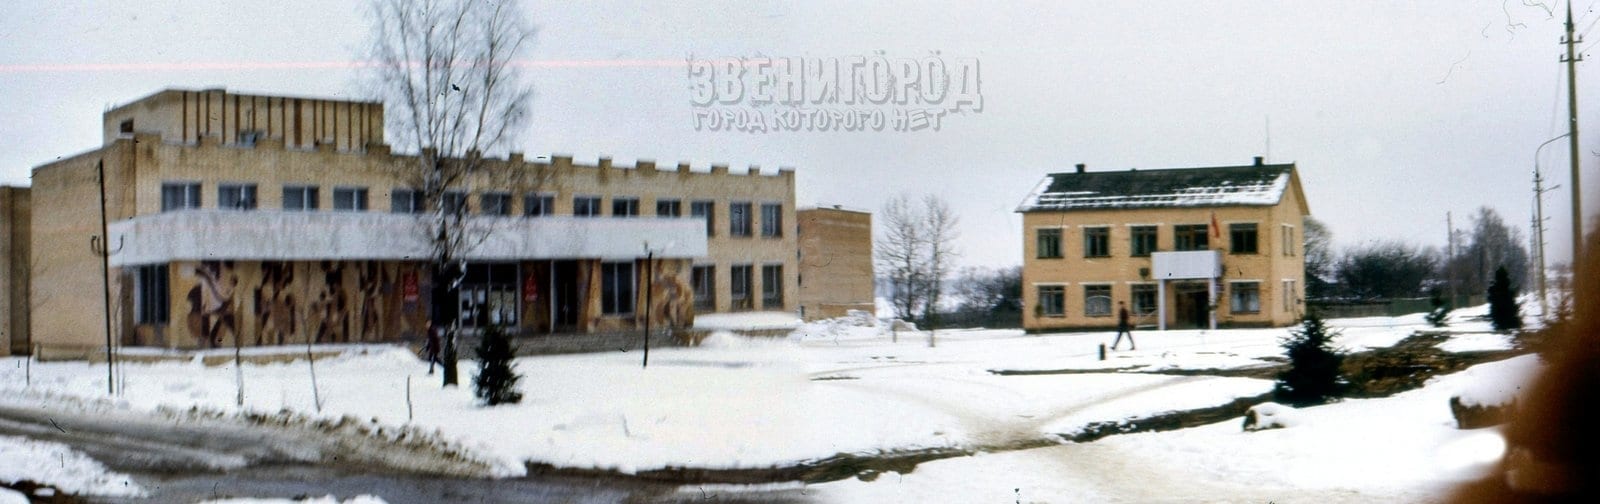 Панорама центральной площади села Ершово из двух фото 1989 года, искусственно "склеенная"  по технологиям 21 века.